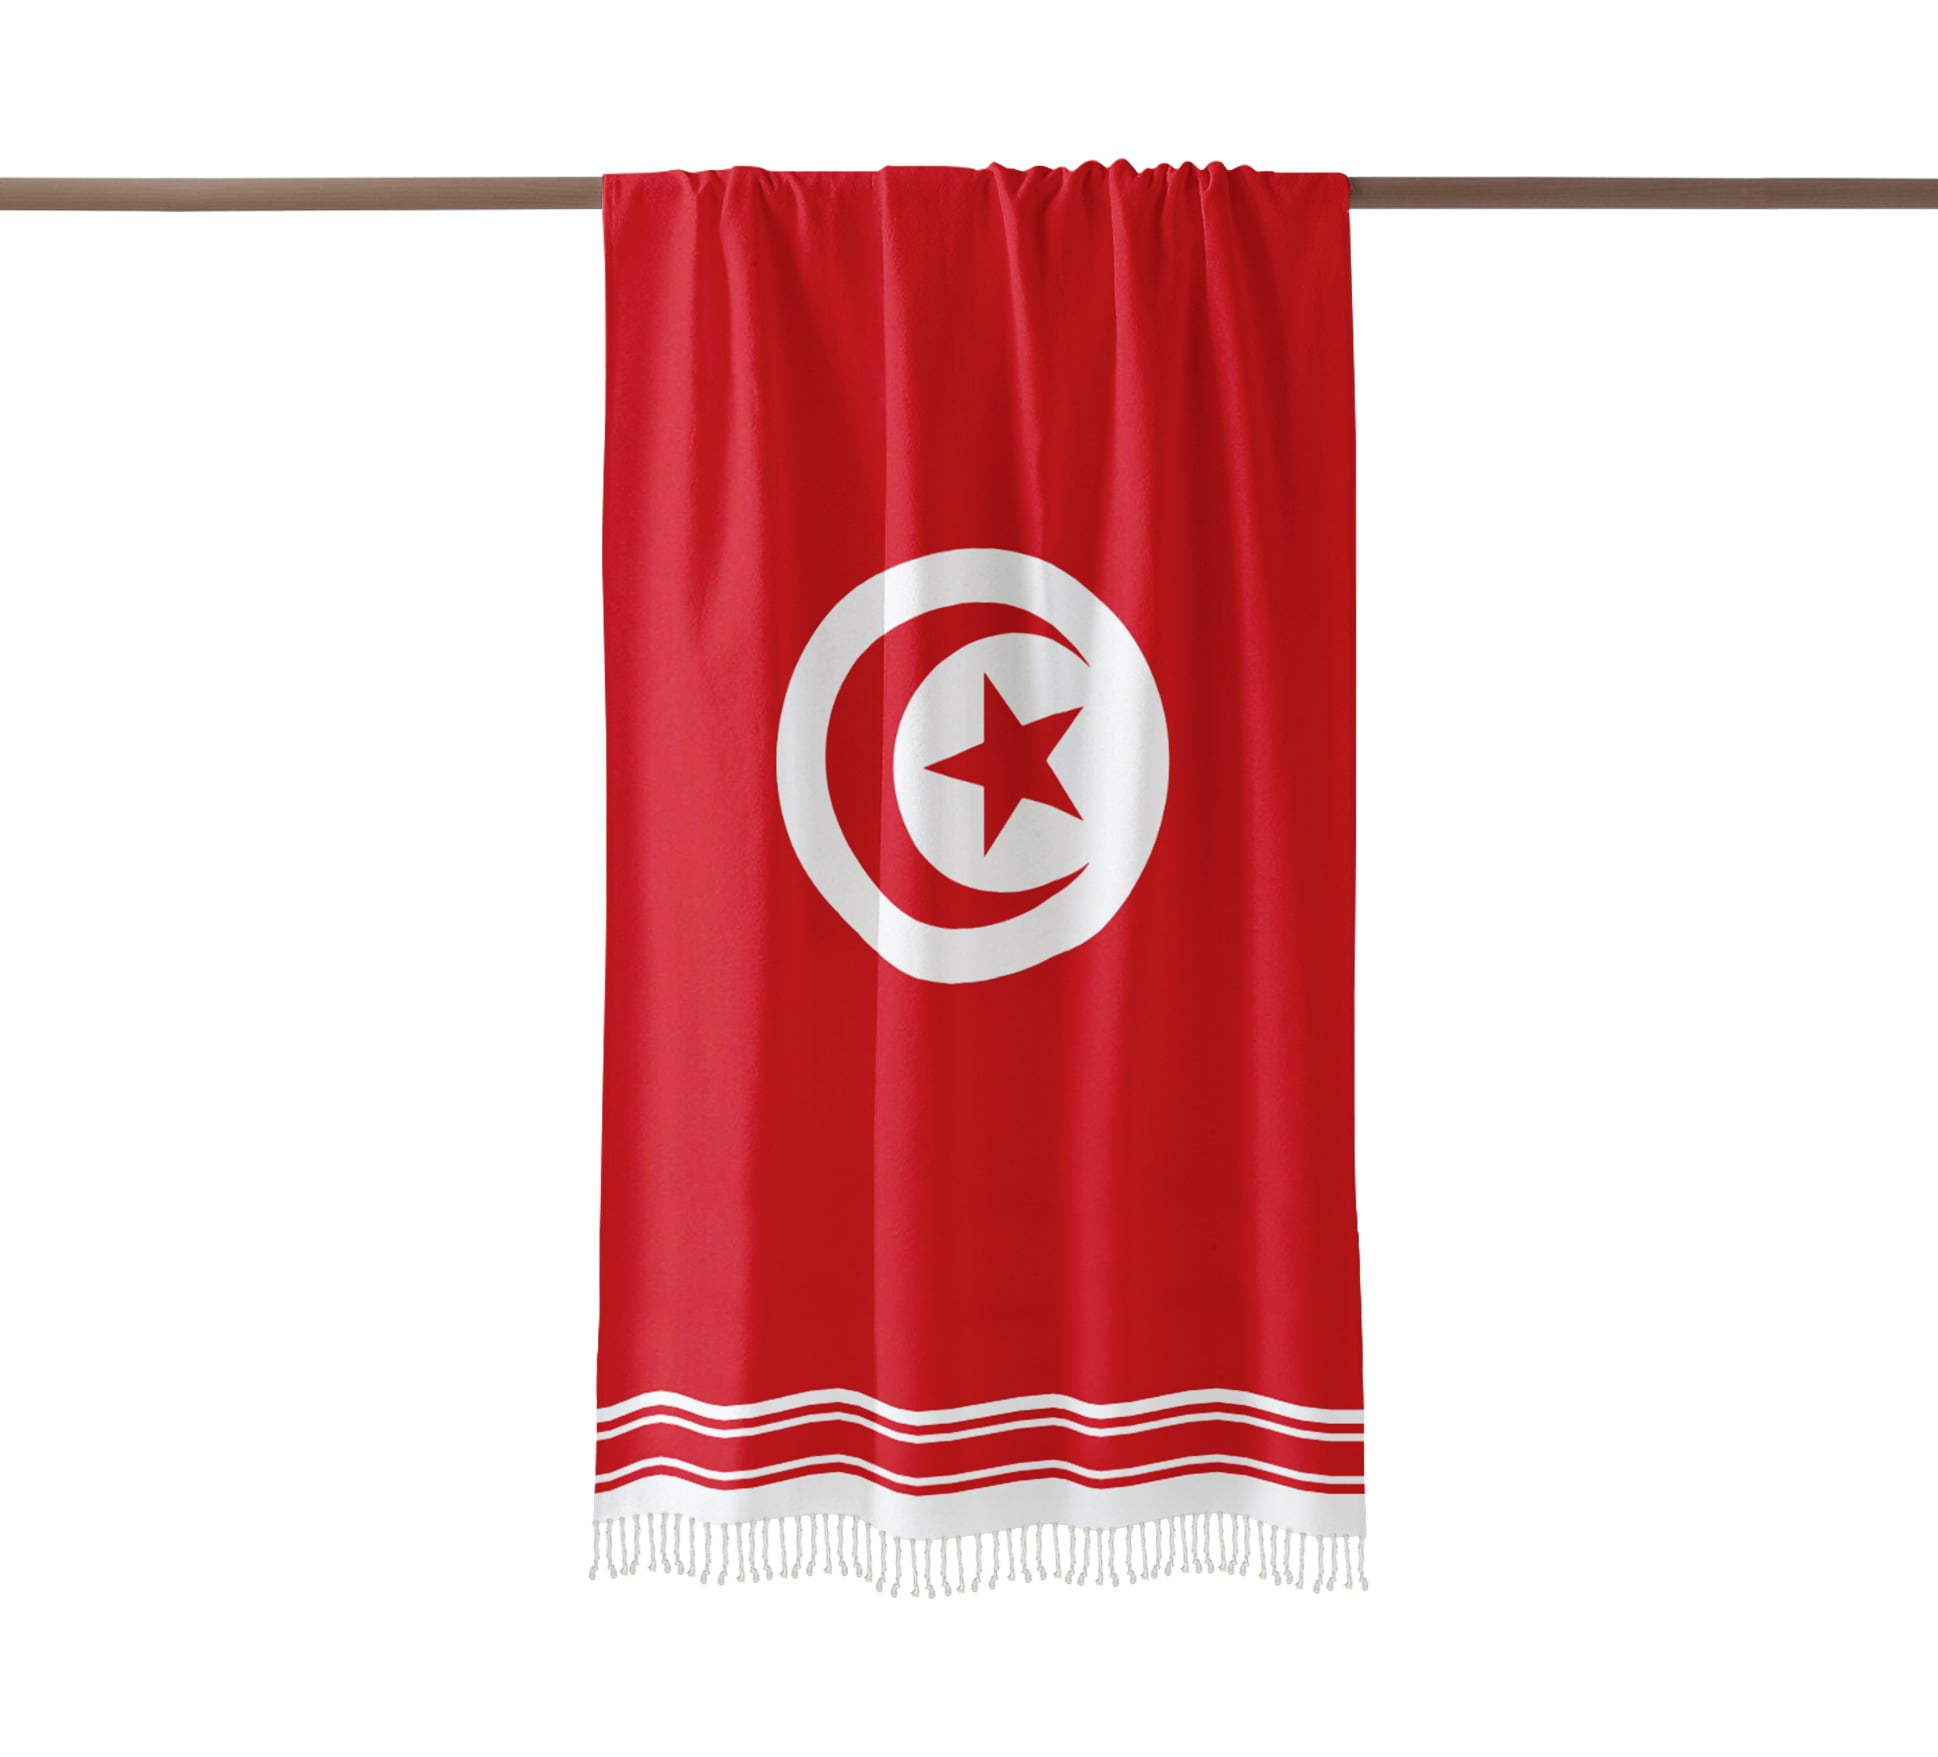 Fouta Tunisia Flag